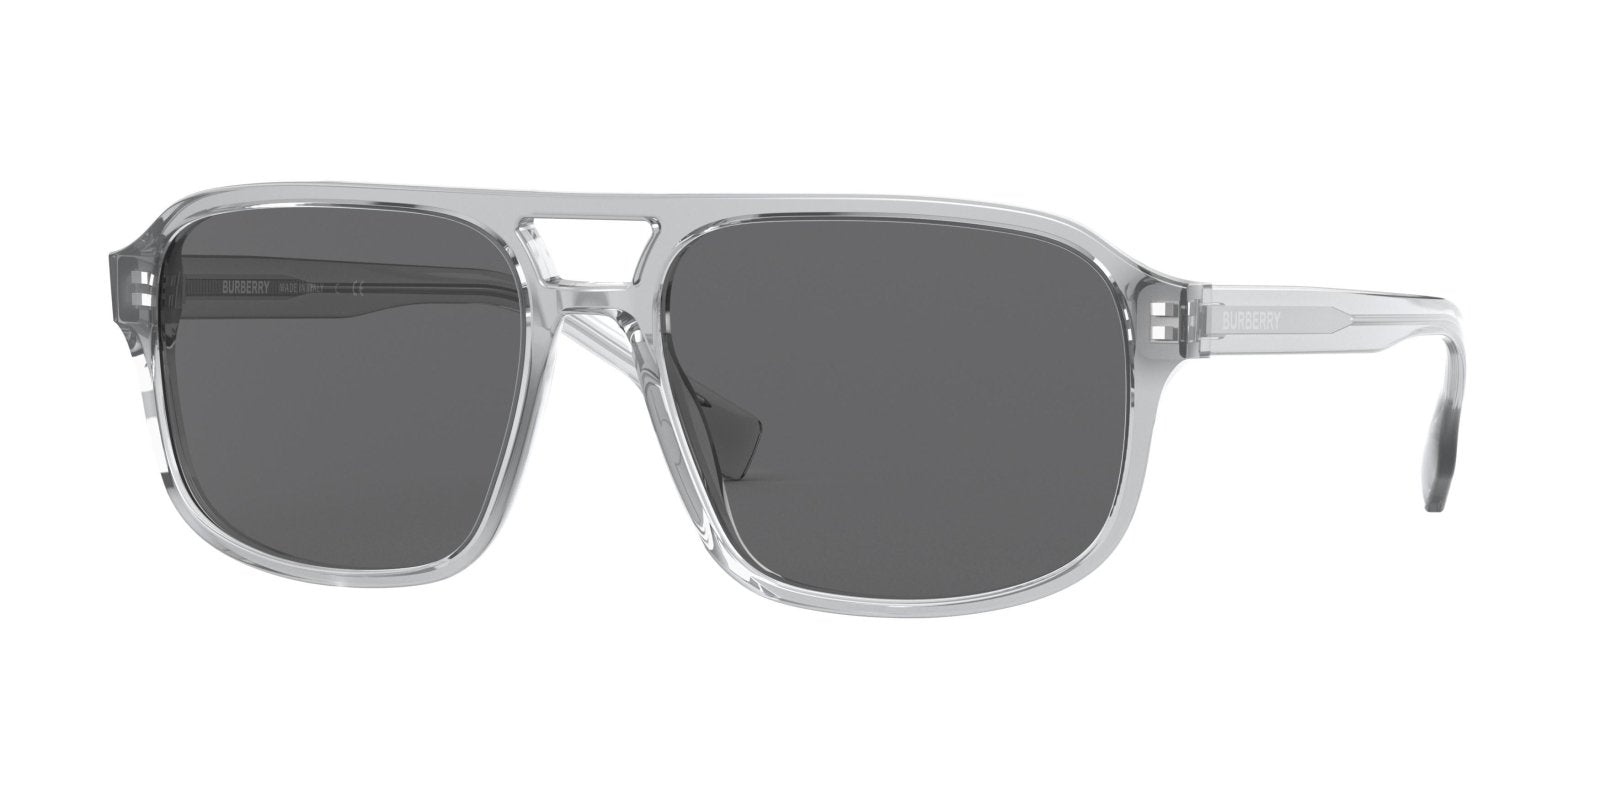 Burberry Francis 4320 Sunglasses